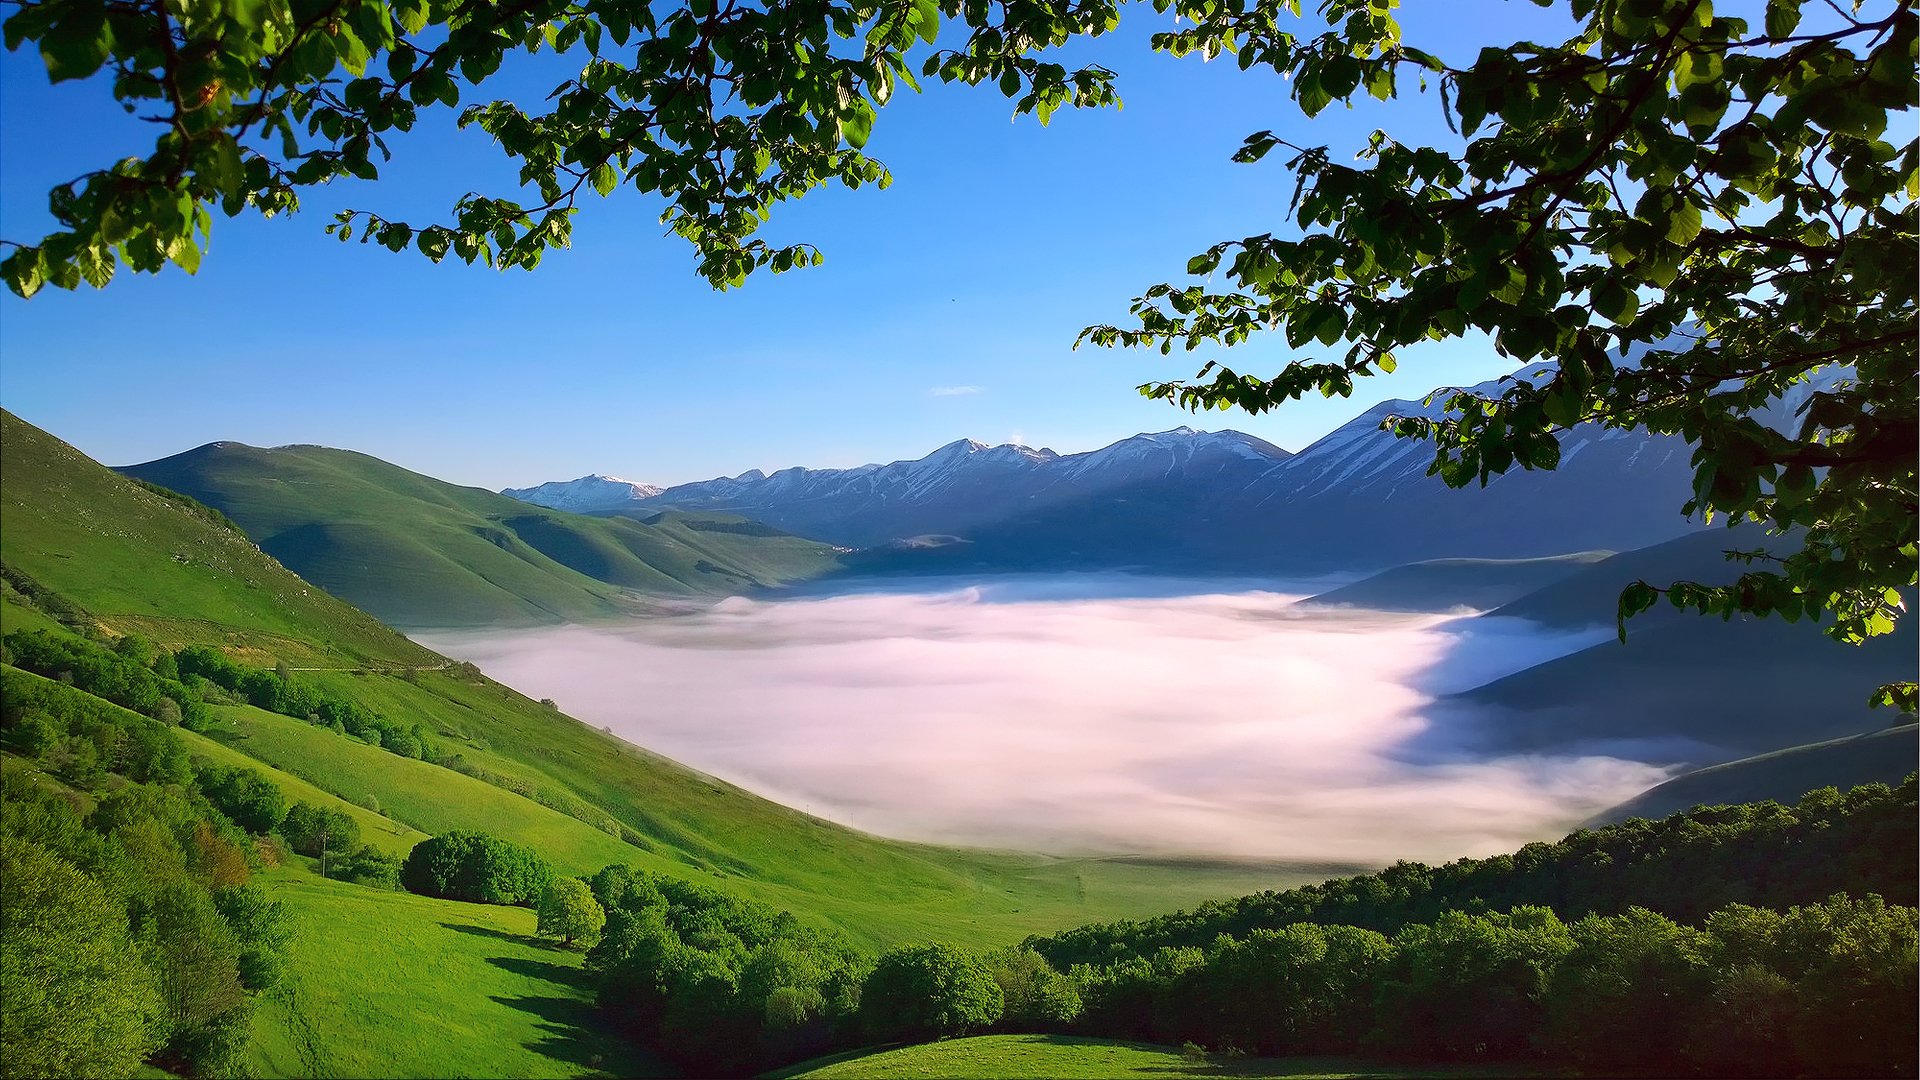 италия апеннинские горы горный хребет монти-сибиллини долина утро туман деревья ветки листва весна май